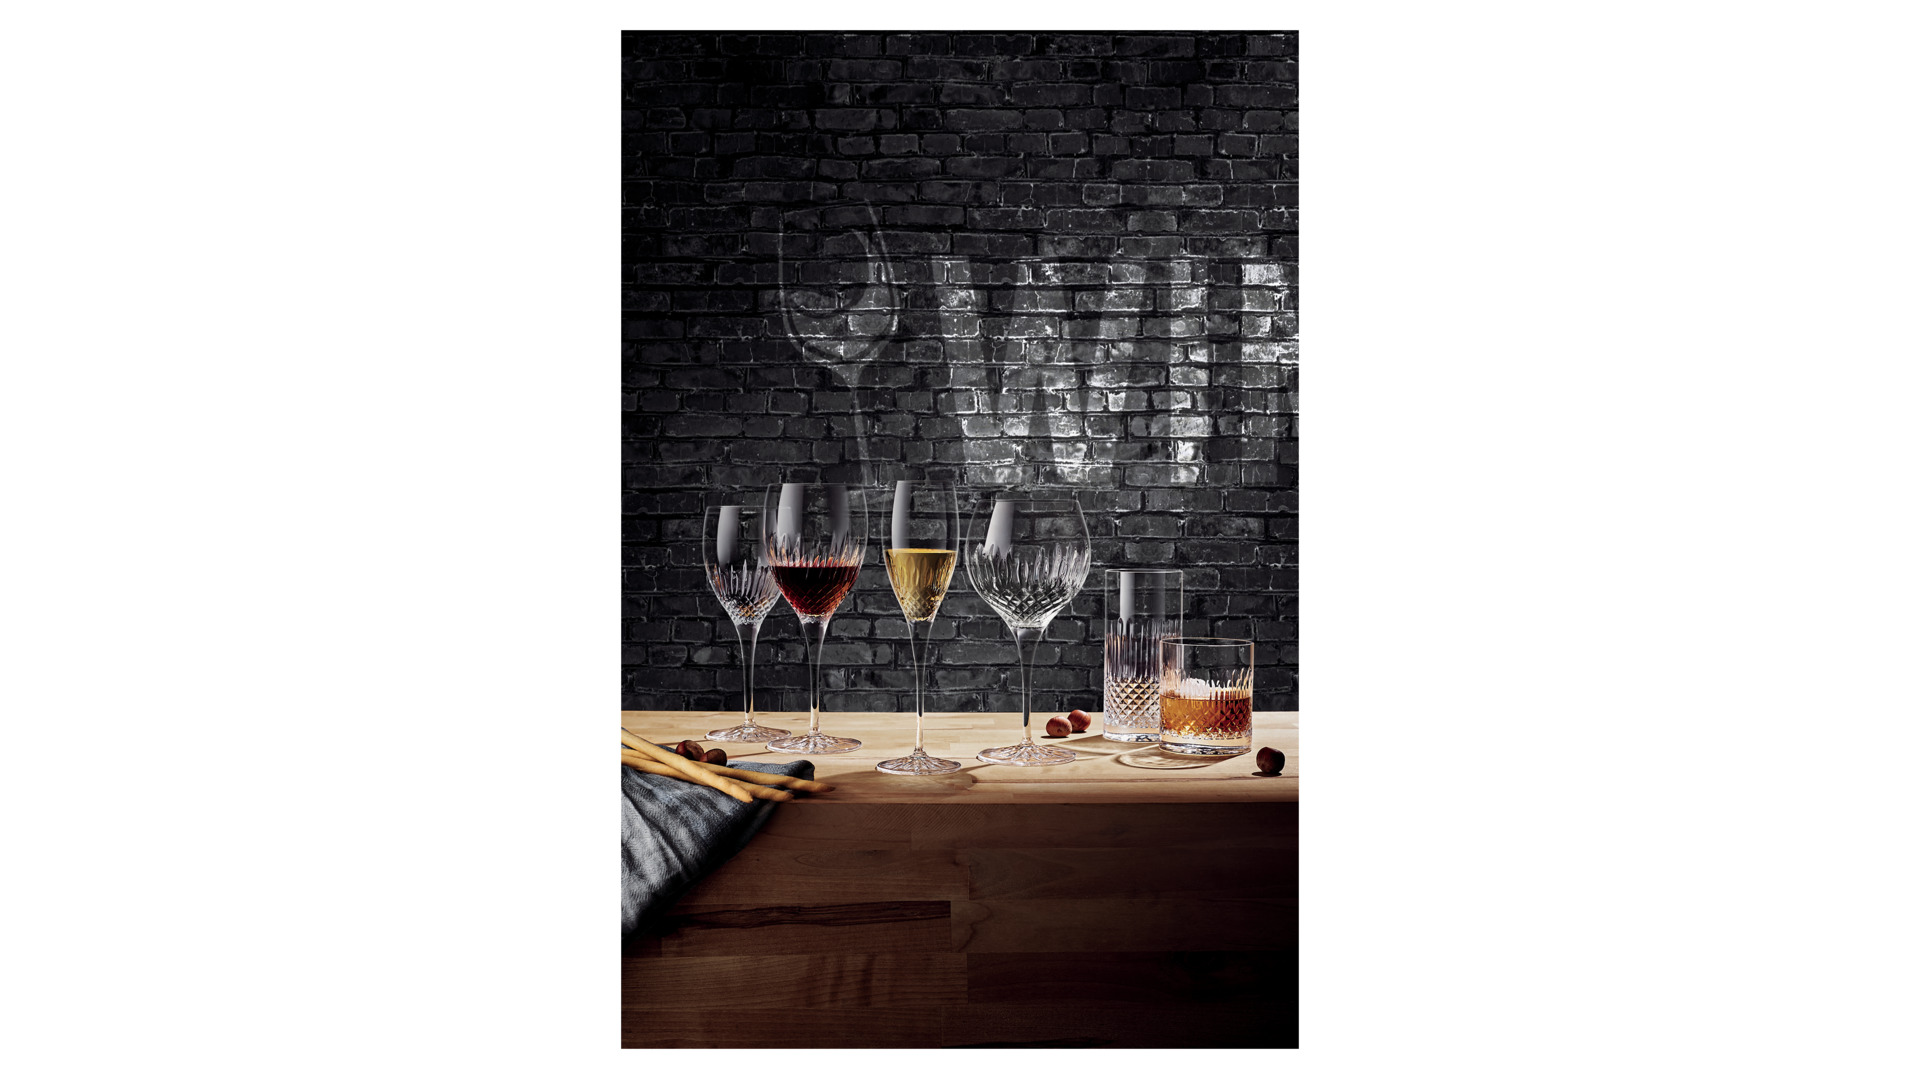 Набор бокалов для красного вина Luigi Bormioli Диаманте 520 мл, 4 шт, стекло хрустальное, п/к